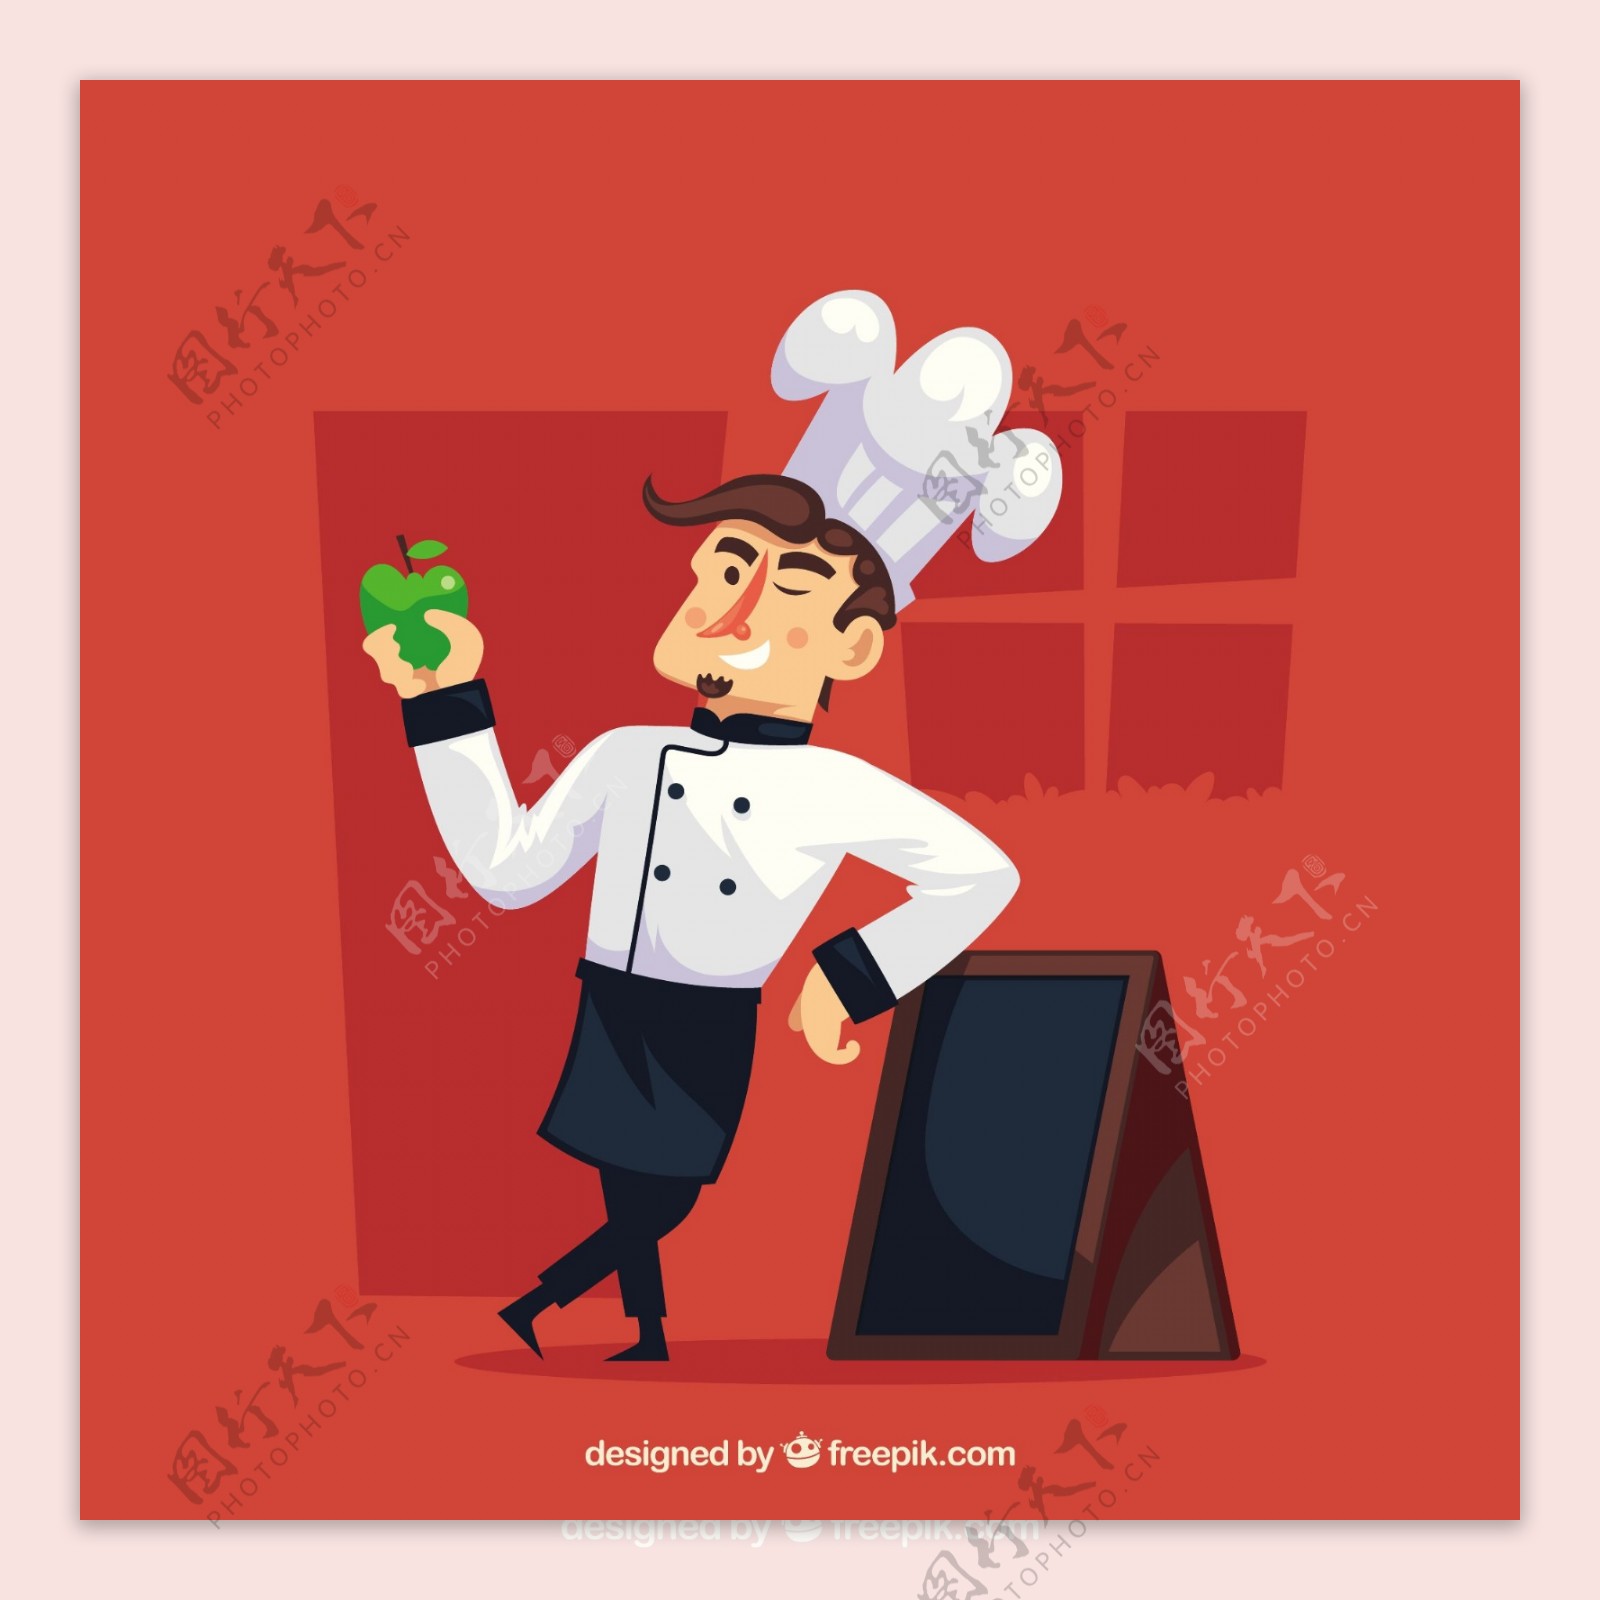 拿着苹果靠着黑板的厨师人物插图红色背景